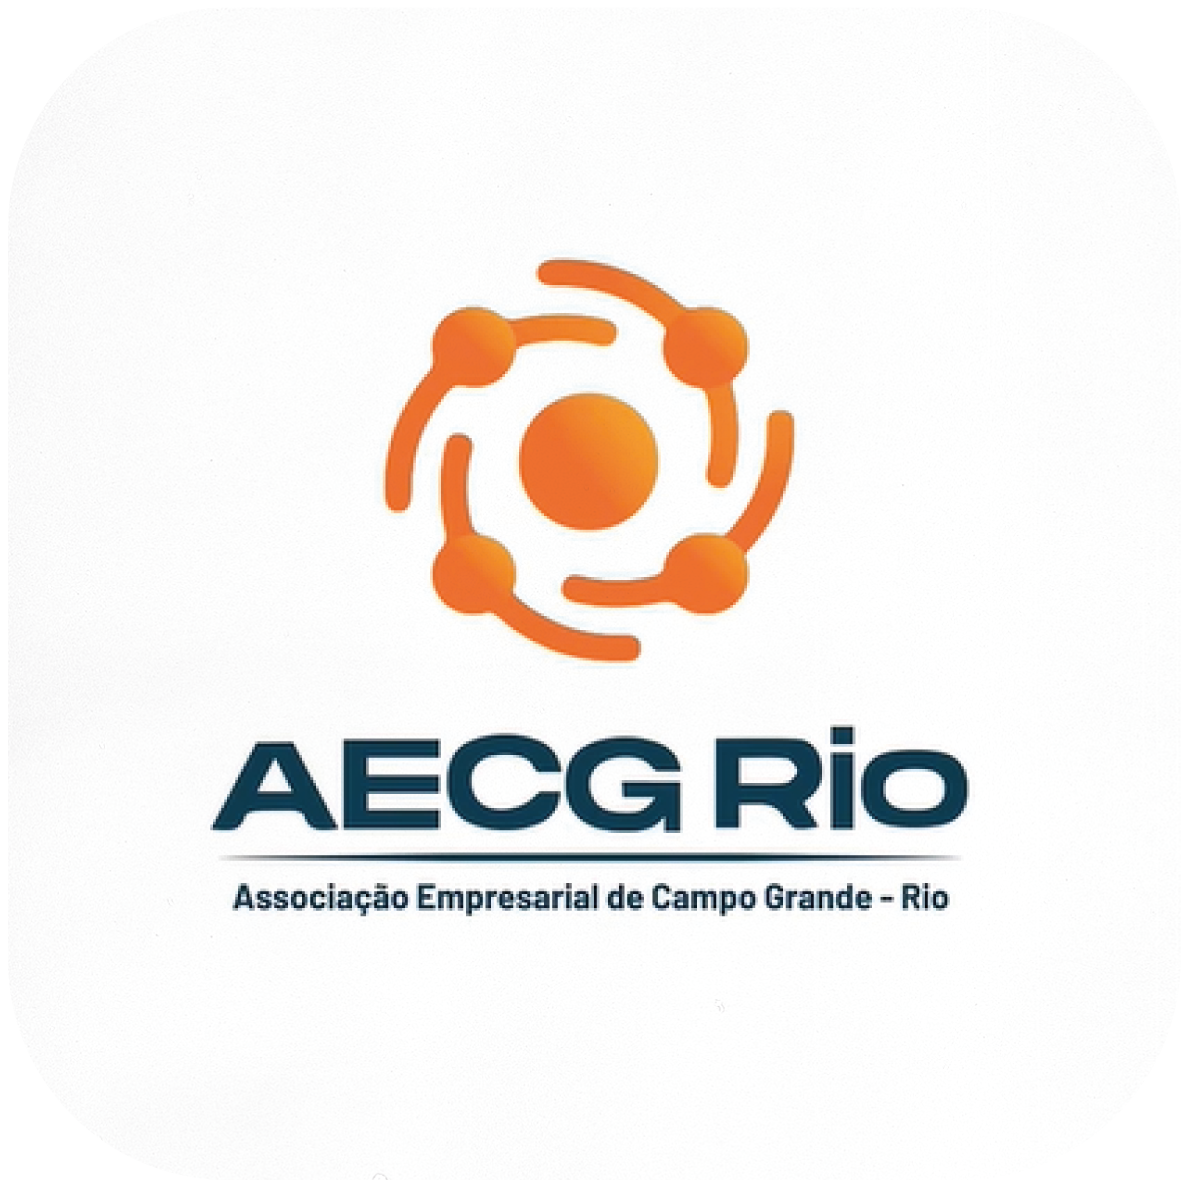 AECG RIO